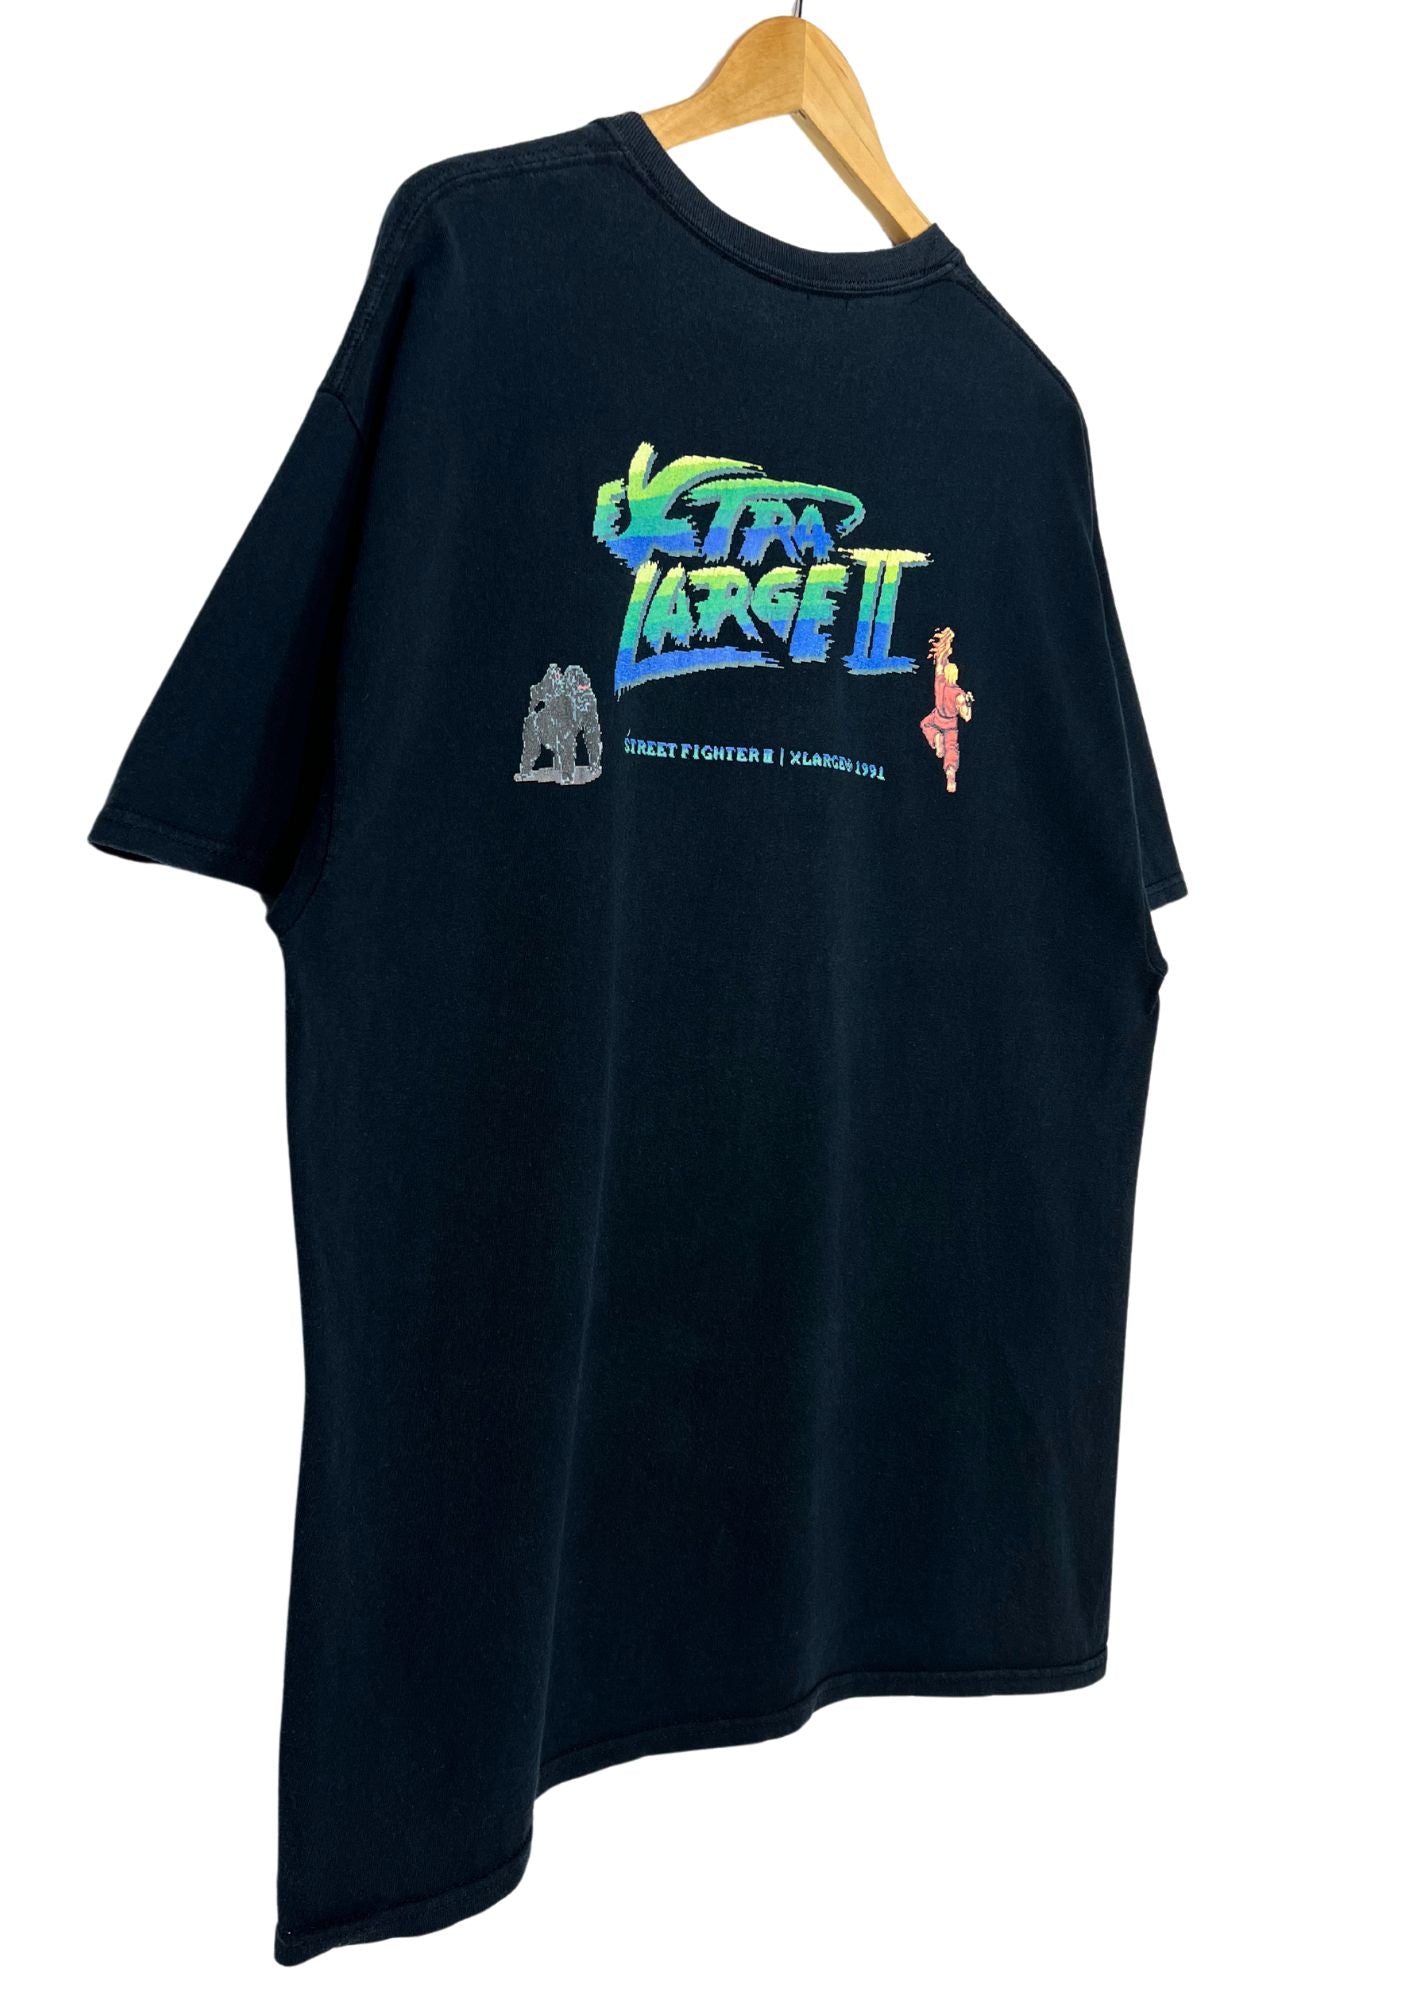 2017 Street Fighter x X-Large Ken T-shirt